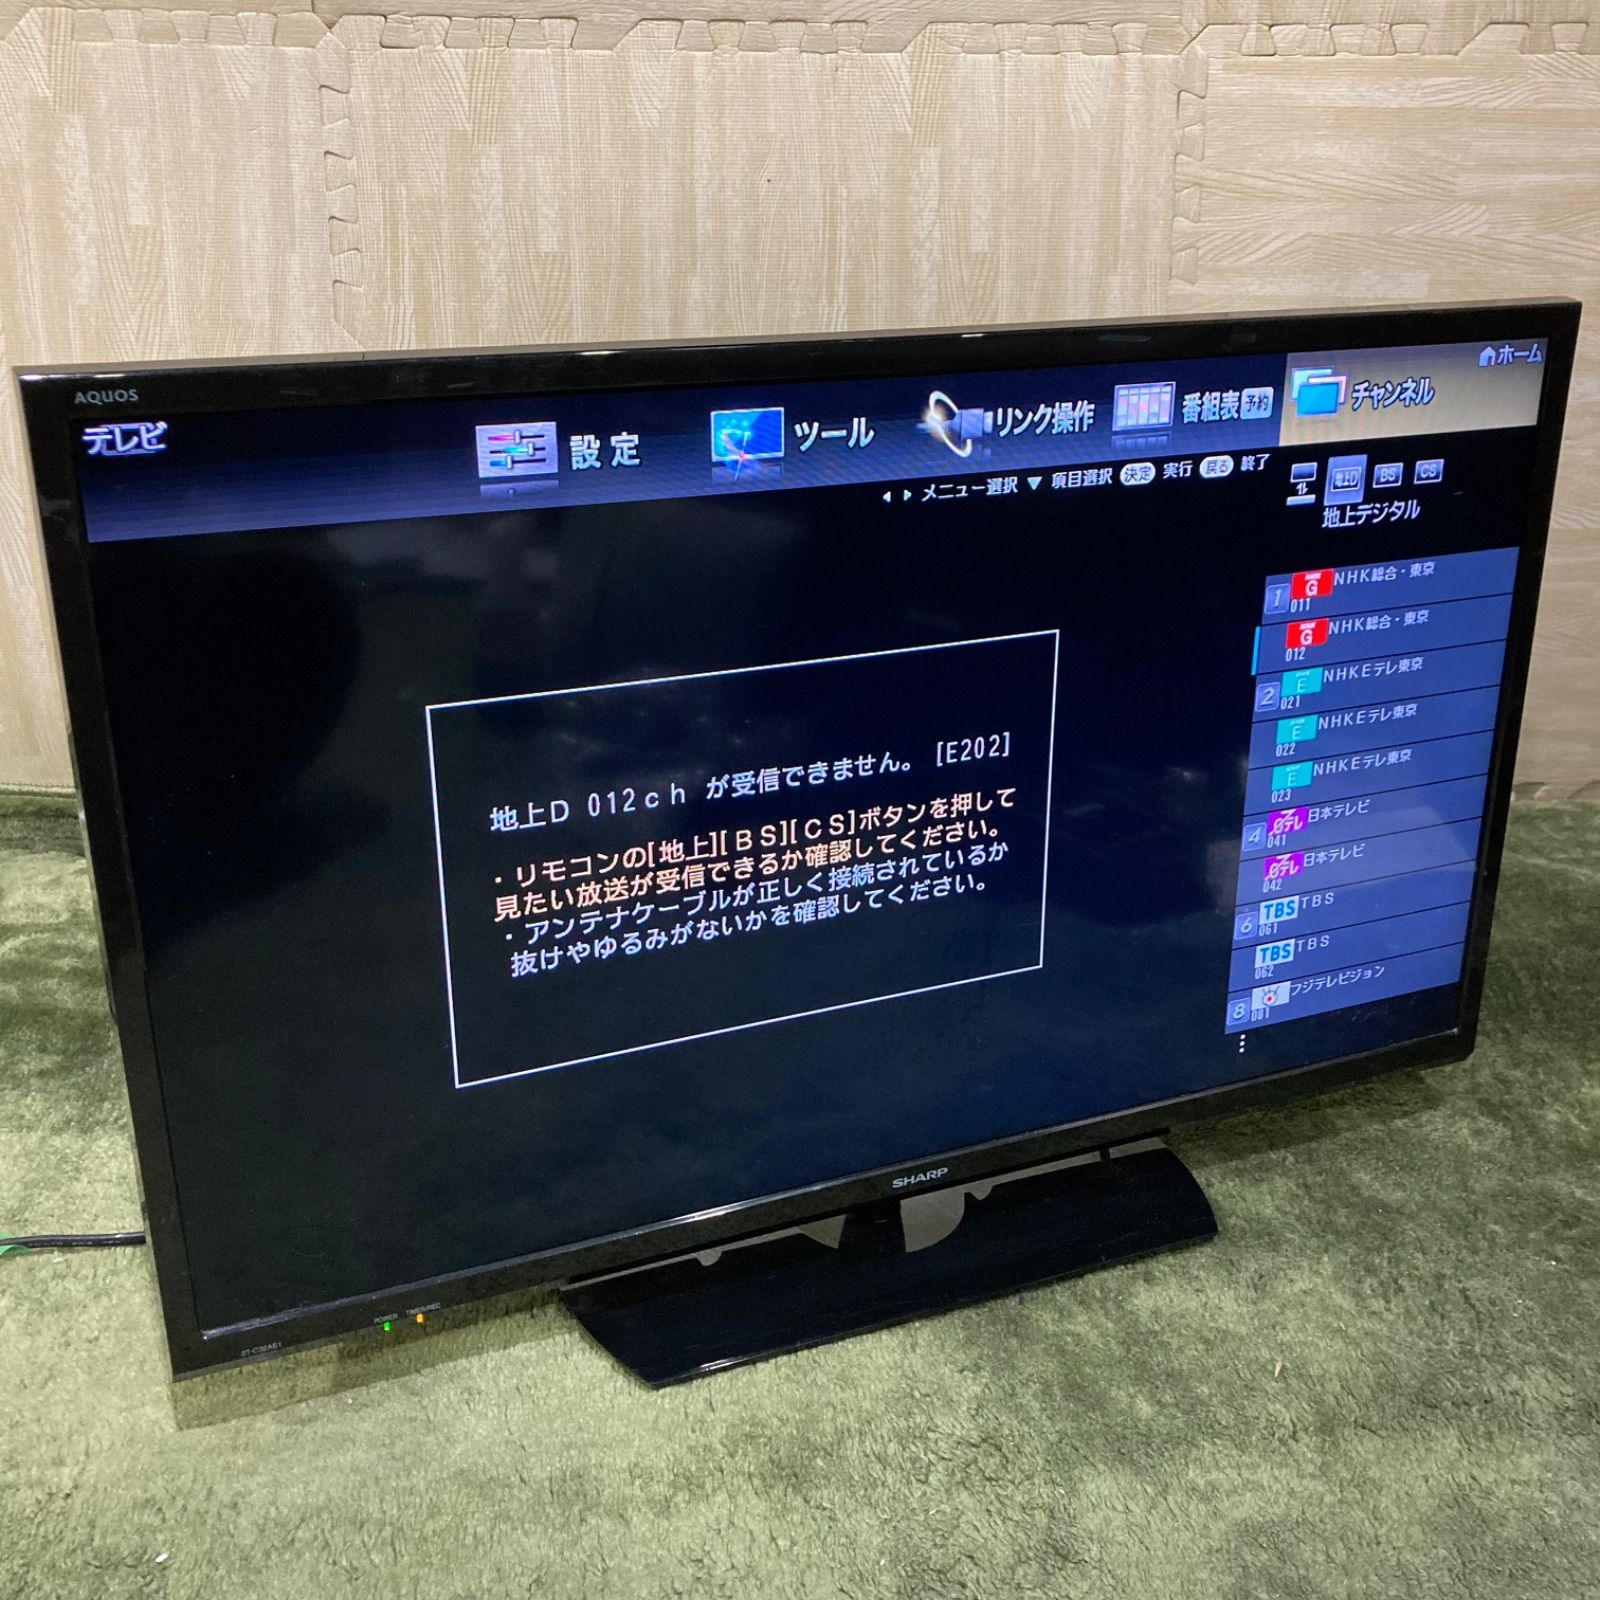 SHARP AQUOS シャープ アクオス 液晶テレビ 32型 2019年製 - テレビ